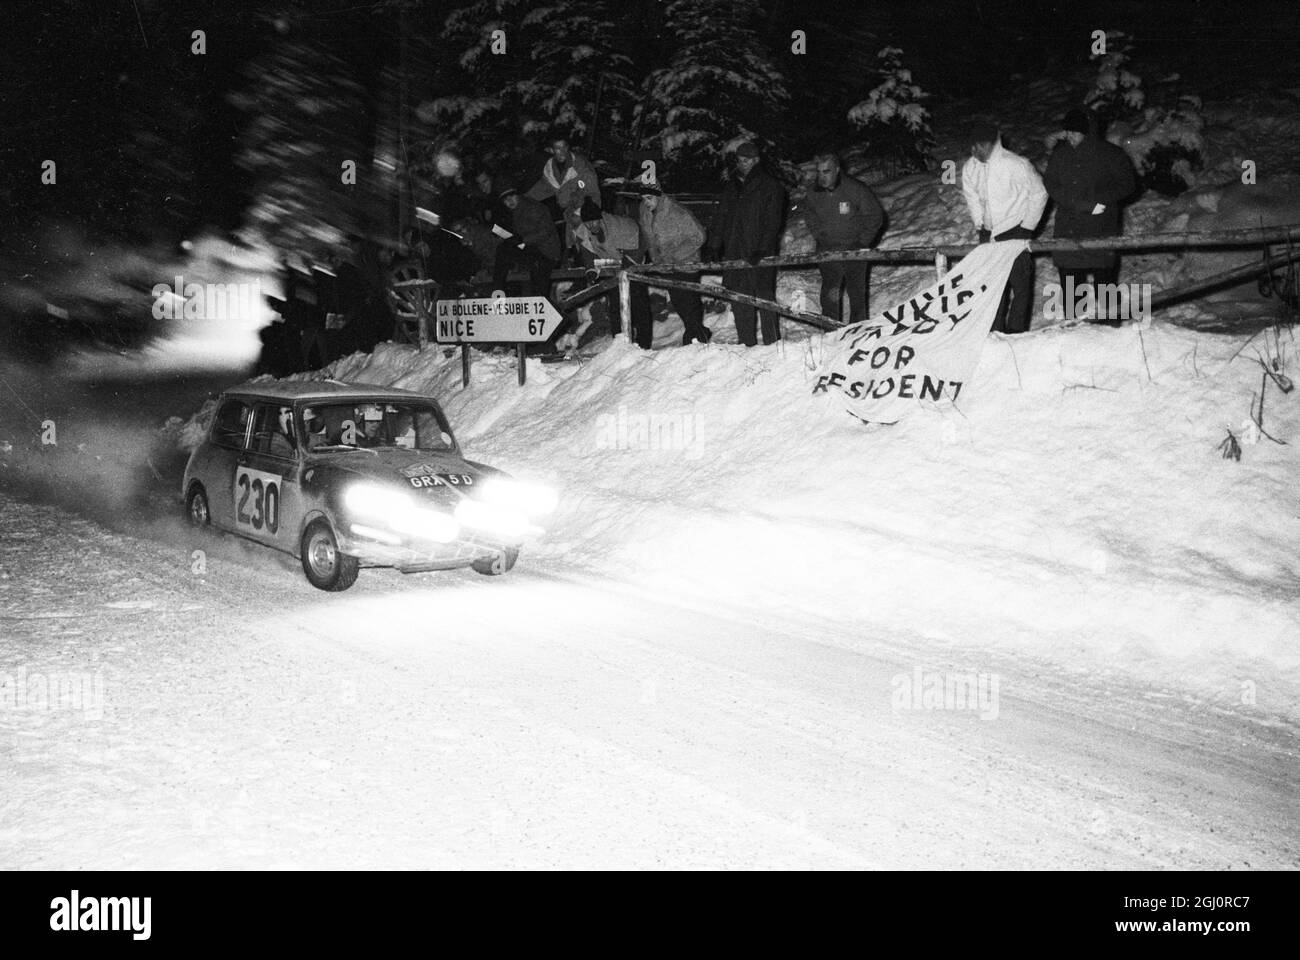 Monte Carlo, Monaco: Der britische Mini cooper, der vom britischen Paddy Hopkirk angetrieben wird, fährt mit Scheinwerfern in die Endphase der jährlichen Rallye Monte Carlo nach Monte Carlo. 20 Januar 1966 . Hopkirks Mini cooper war eines der ersten vier Autos - alle Briten -, die in der zermürbenden Rallye enden, aber alle vier Autos nicht den Rallye-Vorschriften entsprechen. Der offizielle Gewinner der Rallye wurde als Finn Pauli Toivonen bekannt gegeben, der am 22. Januar 1966 mit einem französischen Fahrzeug fuhr Stockfoto